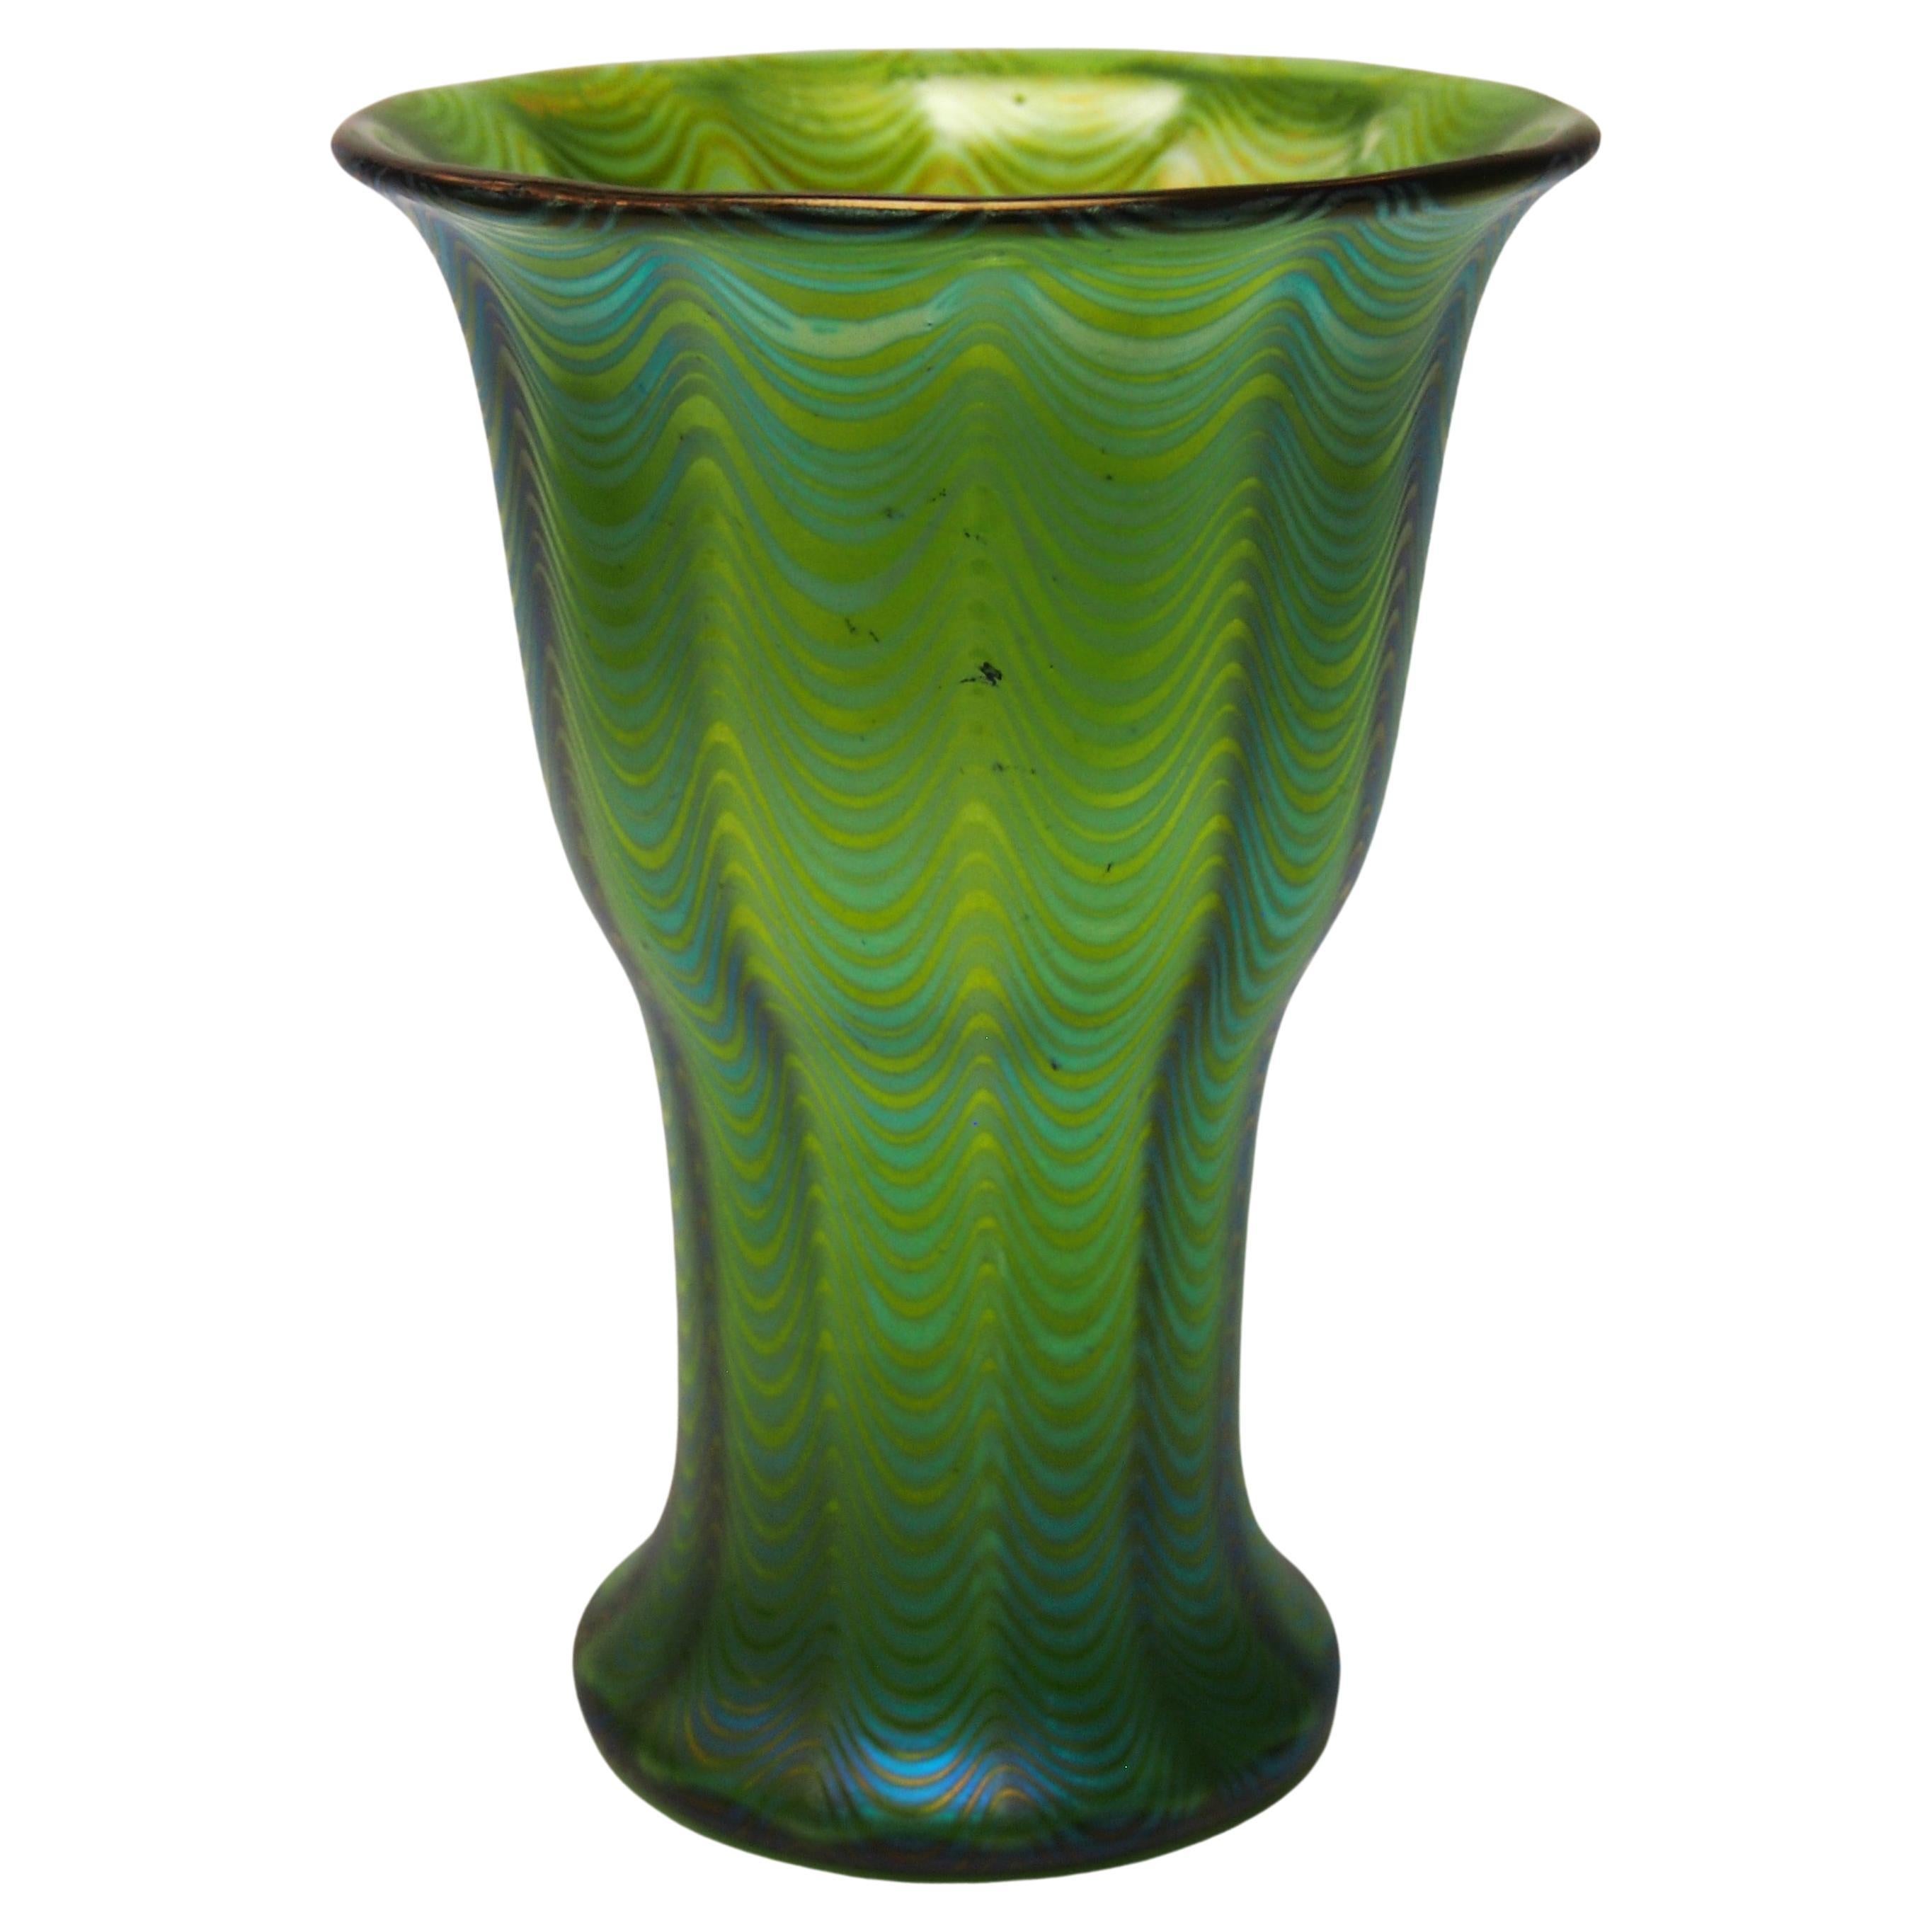 Rare and Important Loetz Phaenomen Vase Crete PG 6893 made 11898